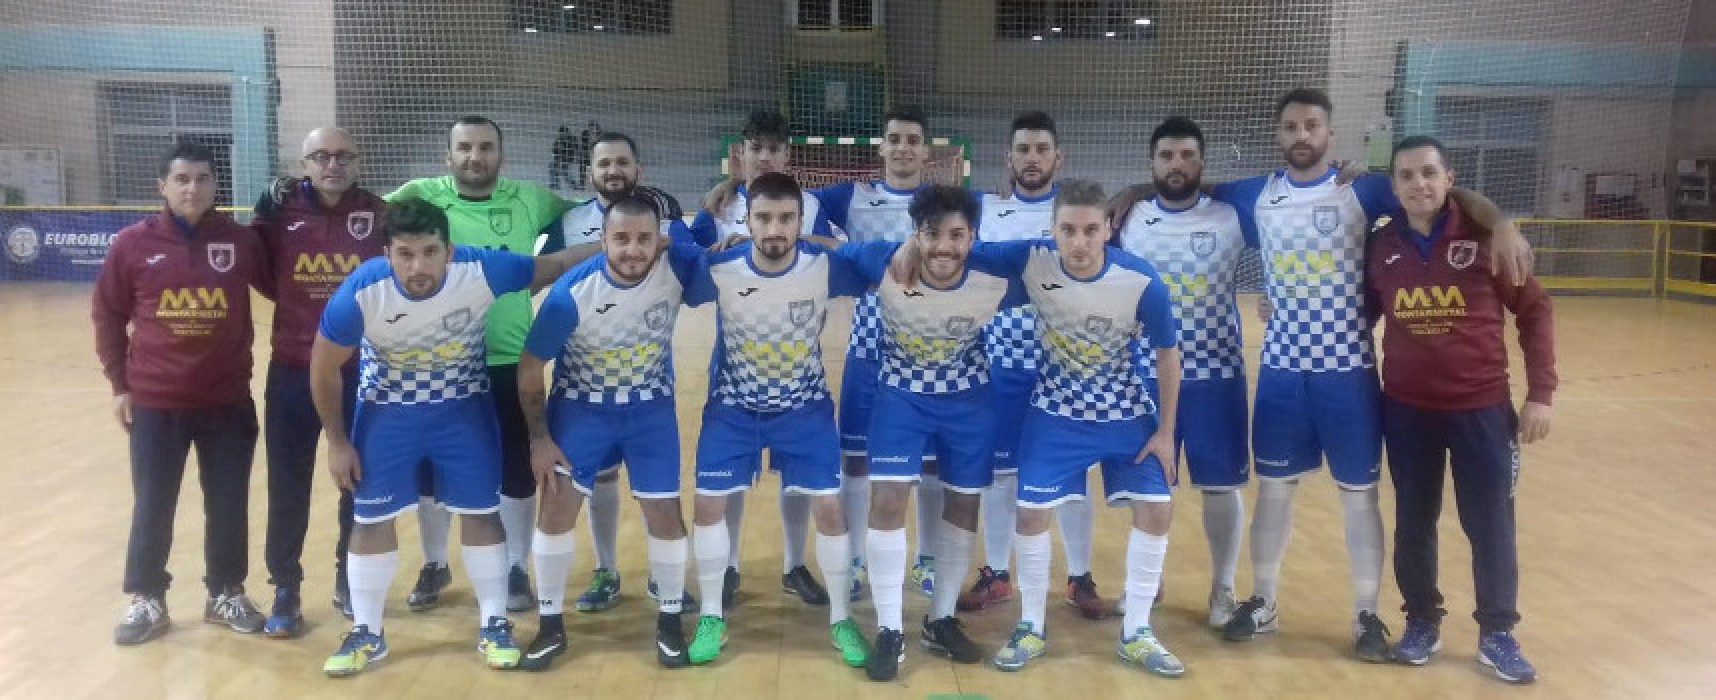 Serie C2: cinquina Futbol Cinco, ko Nettuno, oggi torna la Coppa Puglia / CLASSIFICA